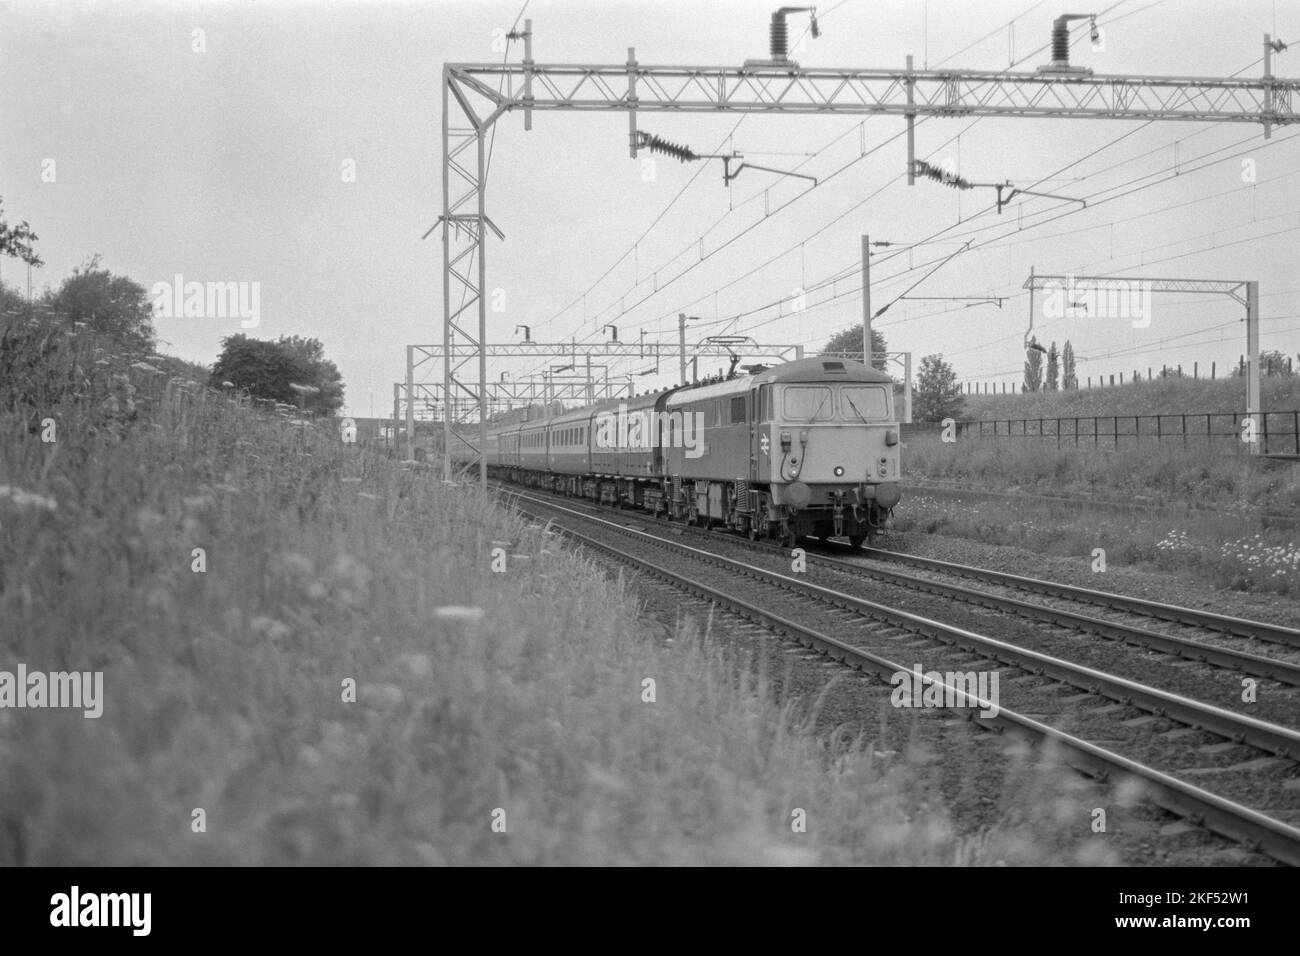 Original britische Eisenbahn elektrische Lokomotive Baureihe 87 Nummer 87025 auf Personenverkehr in der Nähe von Rugby Ende 1970s Anfang 1980s Stockfoto